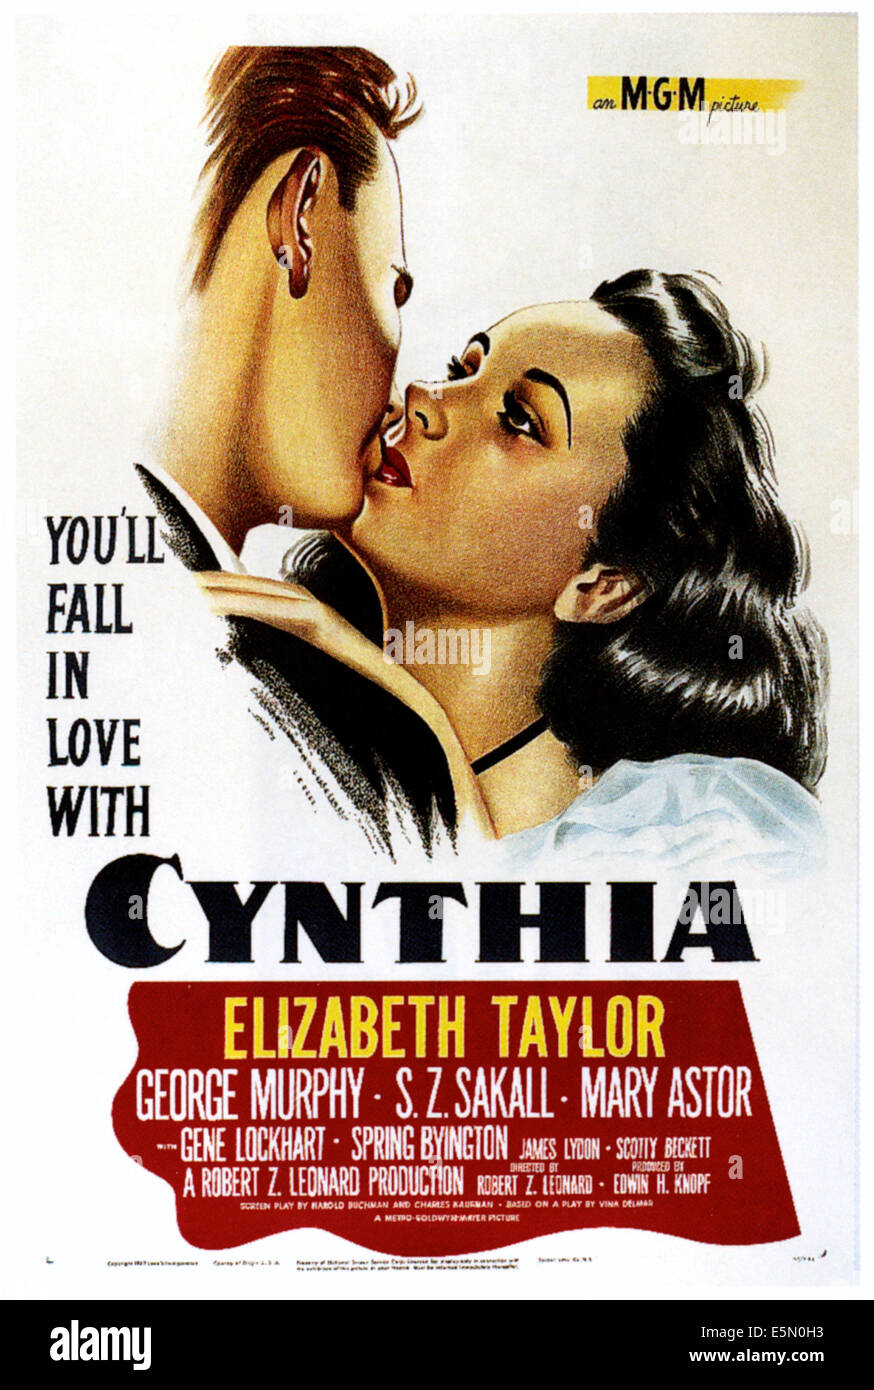 CYNTHIA, Elizabeth Taylor, 1947 Foto de stock